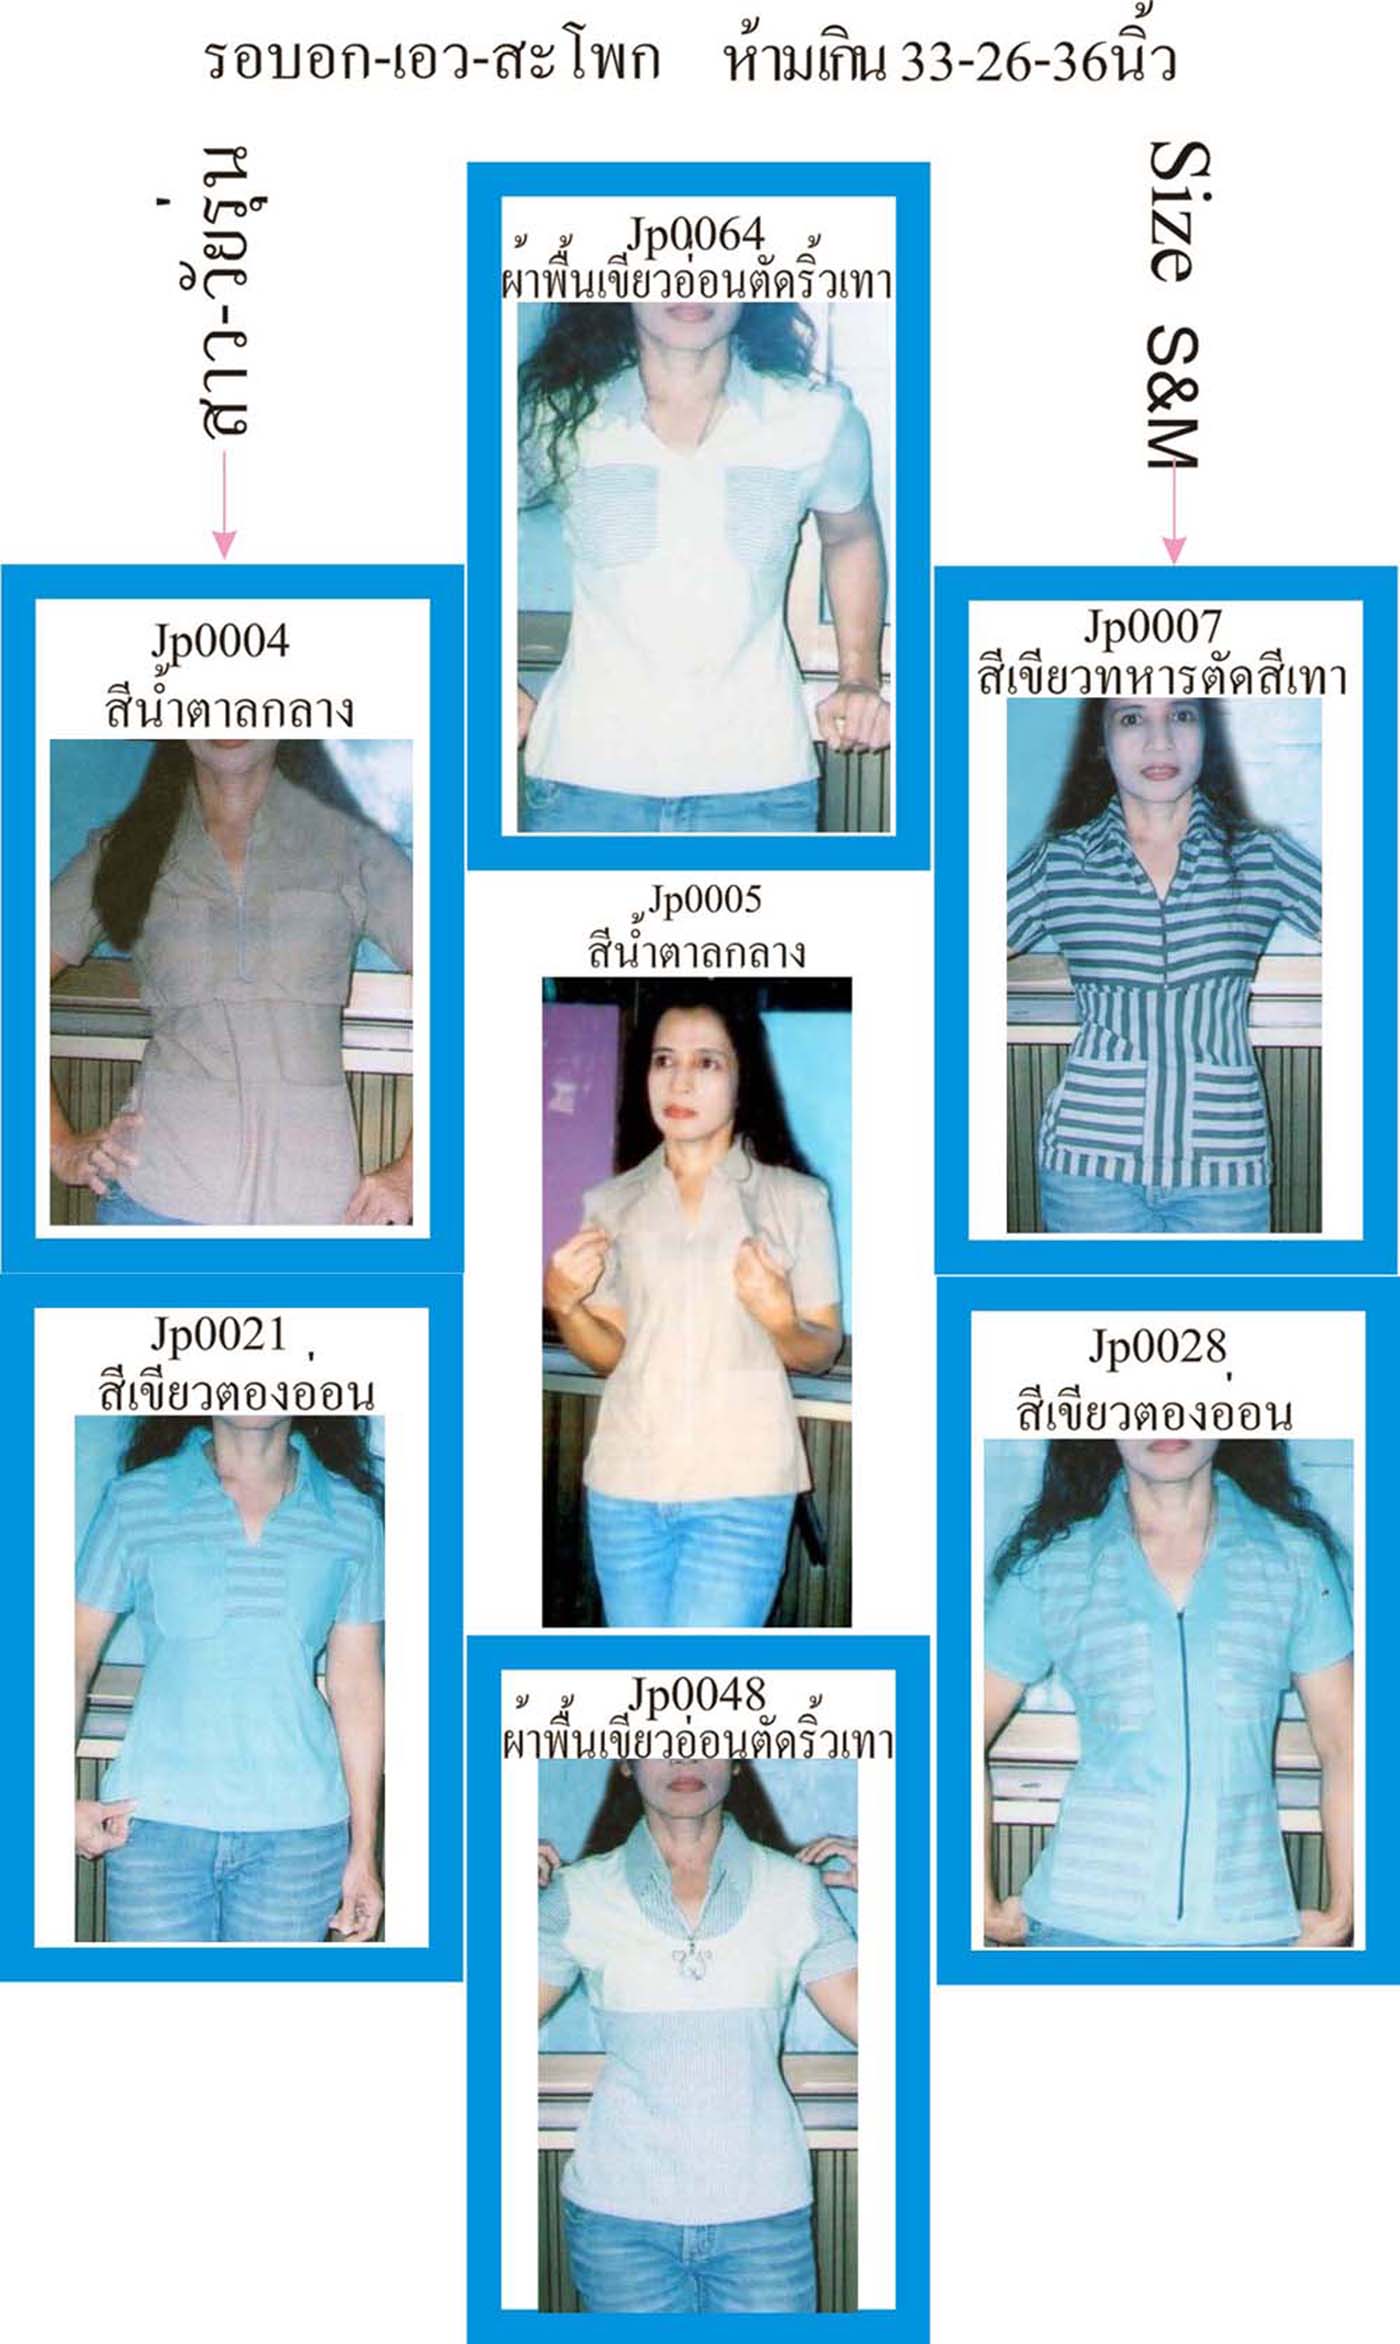  Ladyshirt-handmade เสื้อยืด เพื่อสาว-วัยรุ่น ยุคใหม่ที่ไม่วิ่งตามแฟชั่น ราคาเดียวรวม EMS 300 บาท/ตัว  รูปที่ 1